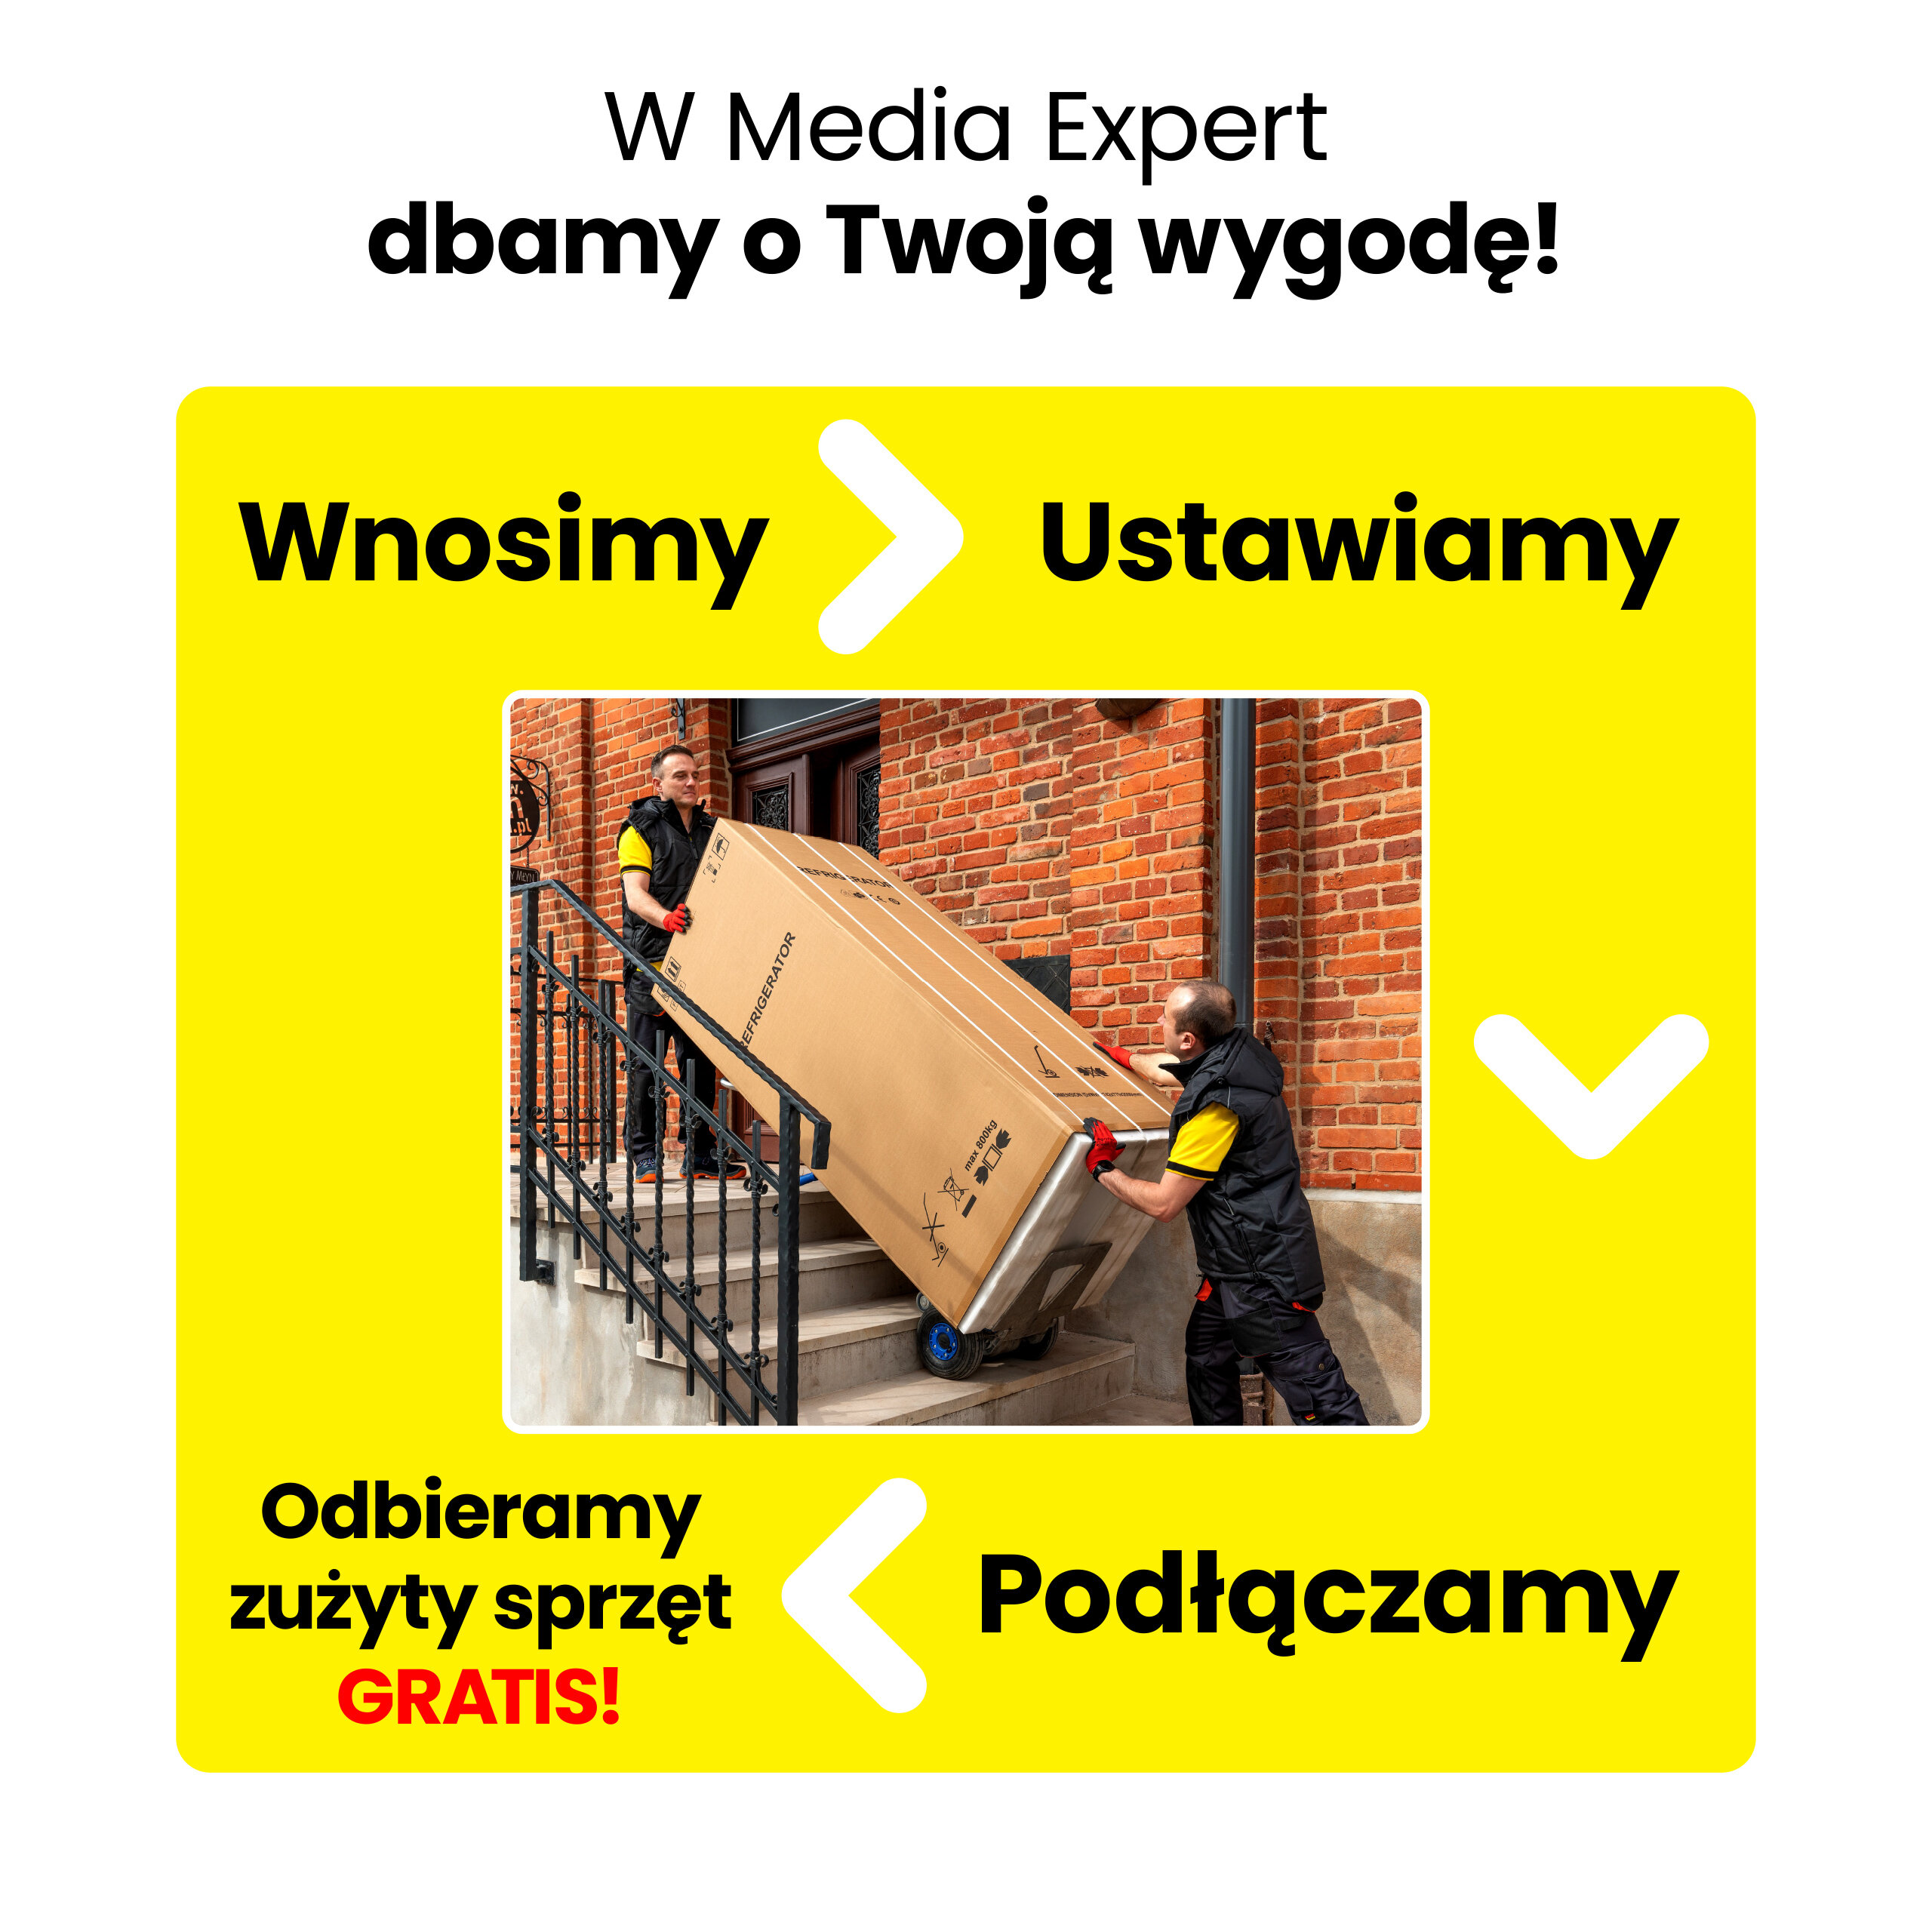 MIELE KFN 28132 D WS 186.1cm Biała Lodówka - niskie ceny i opinie w Media  Expert